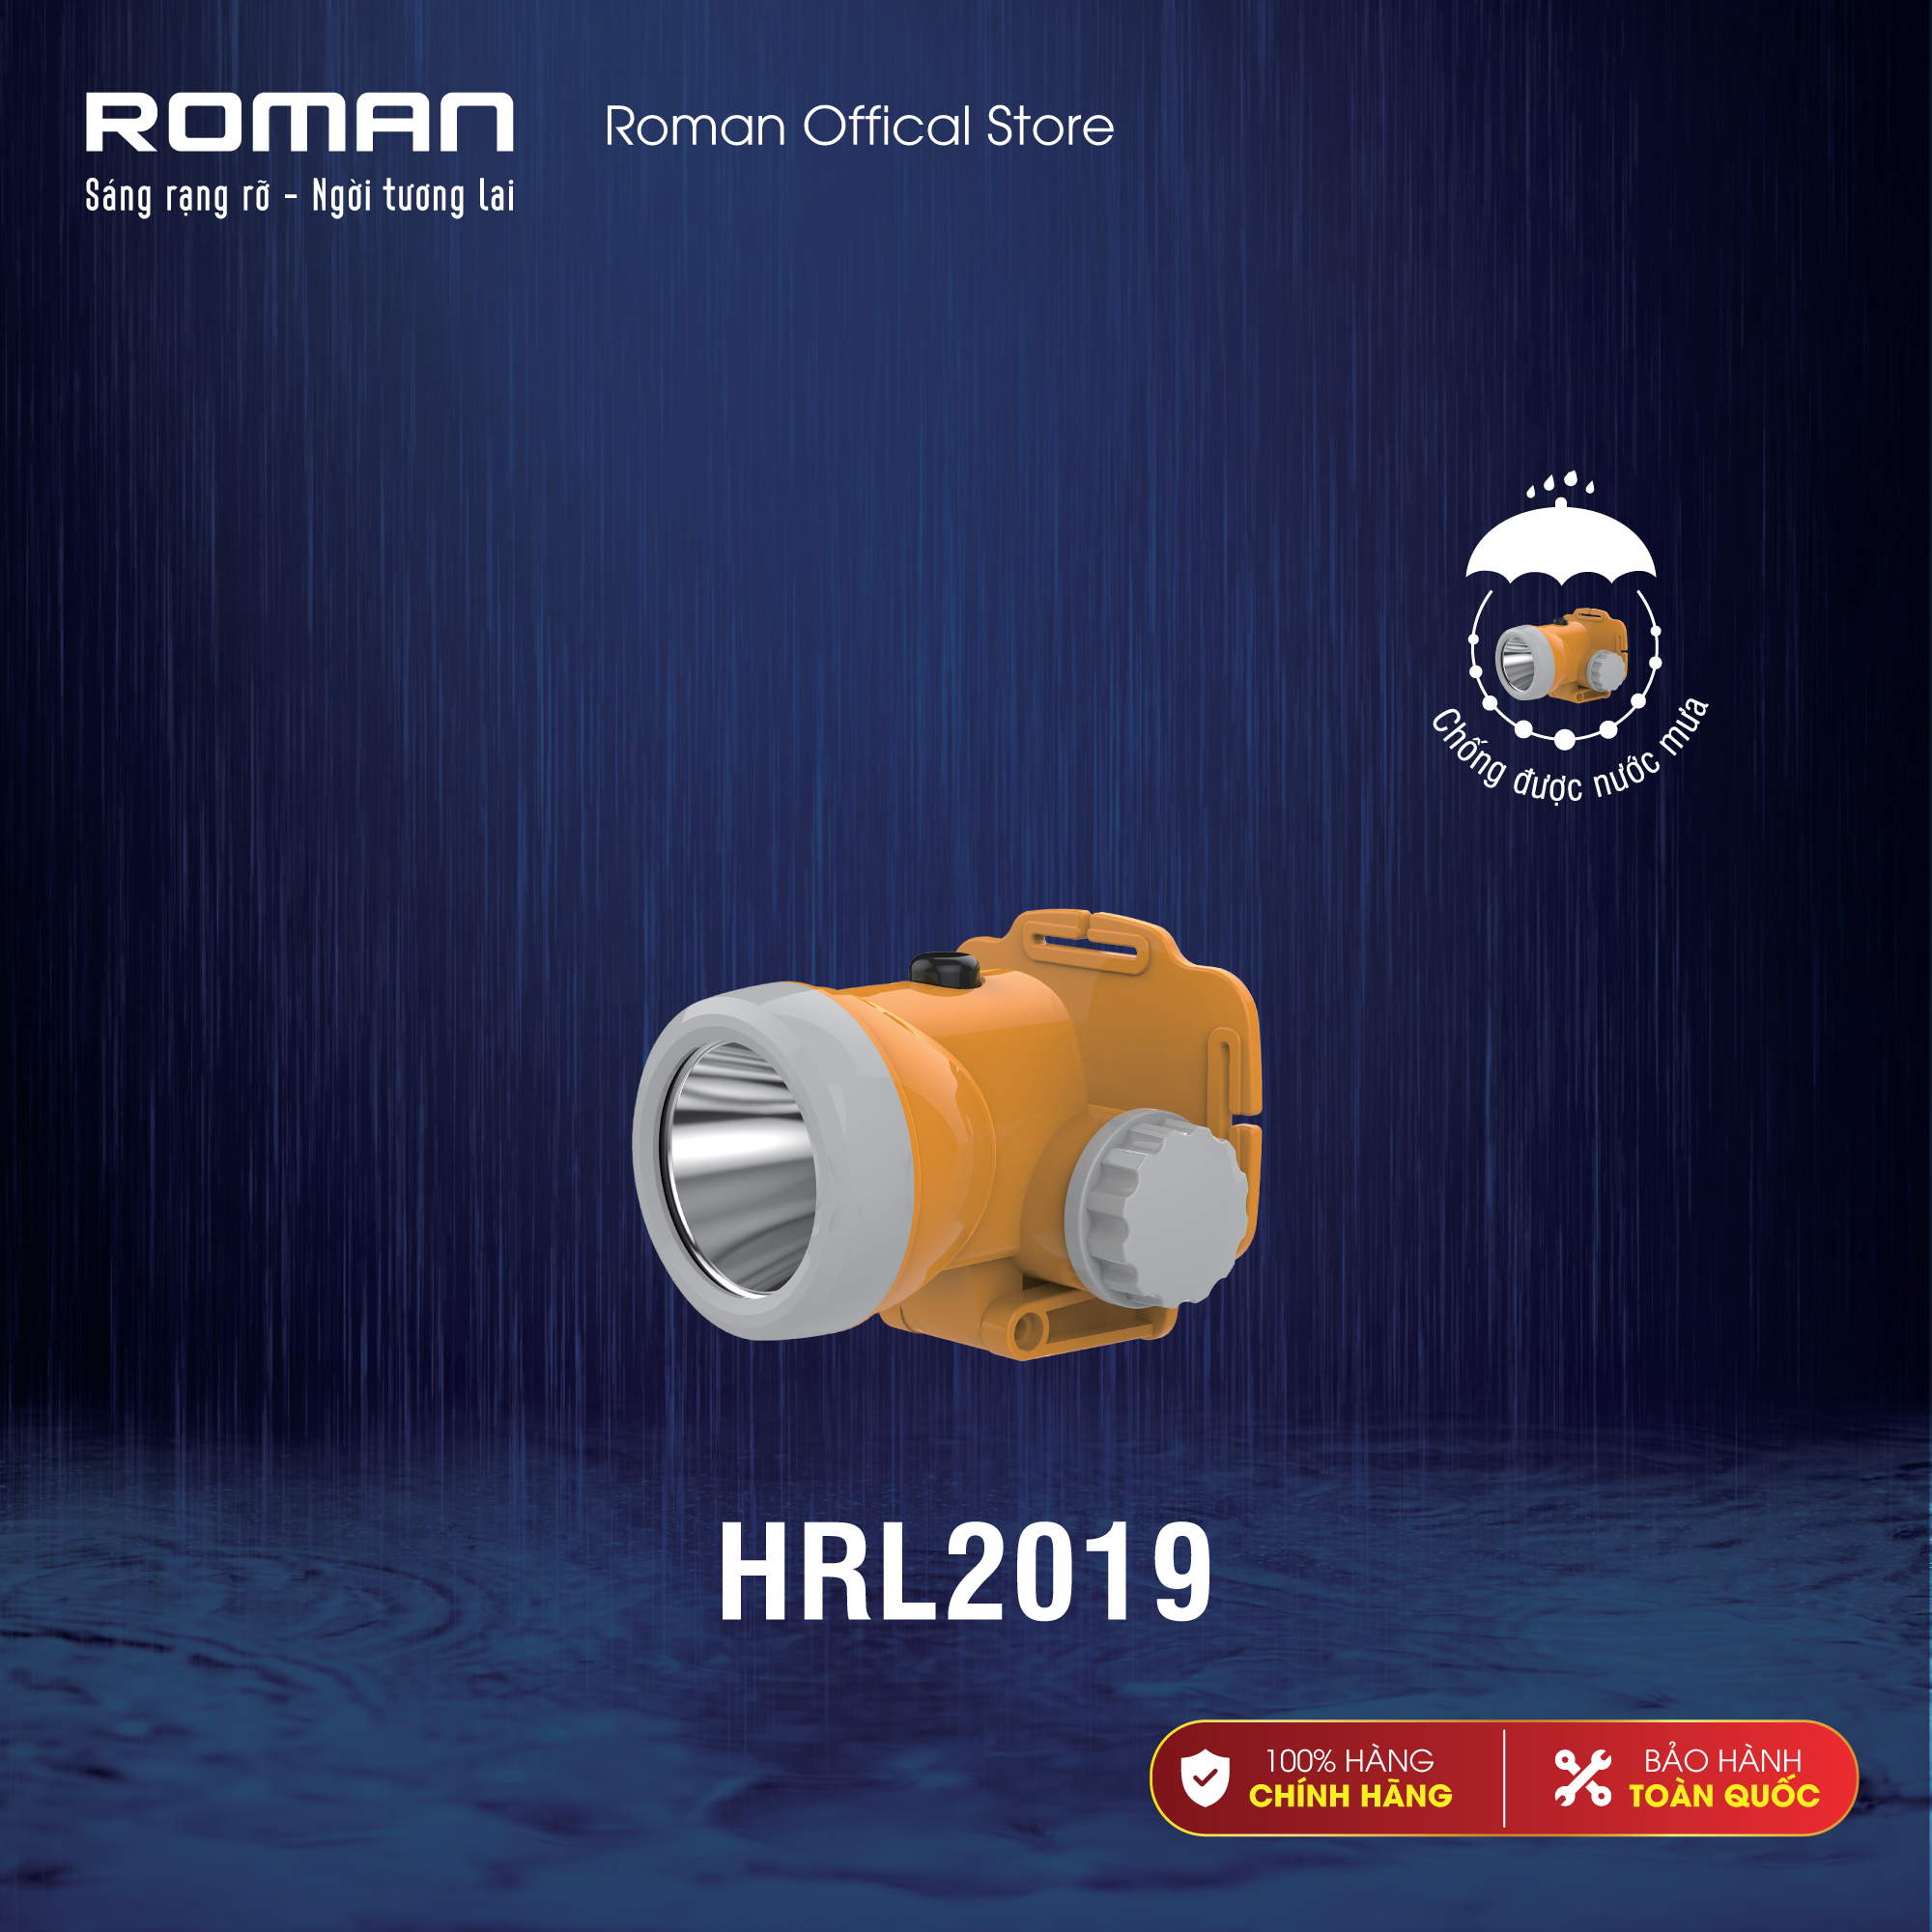 Đèn sạc đội đầu có khả năng chống nước mưa chính hãng Roman ELE2019 - Thắp sáng liên tục đến 8 giờ sử dụng với 2 dòng ánh sáng ấm hoặc trắng